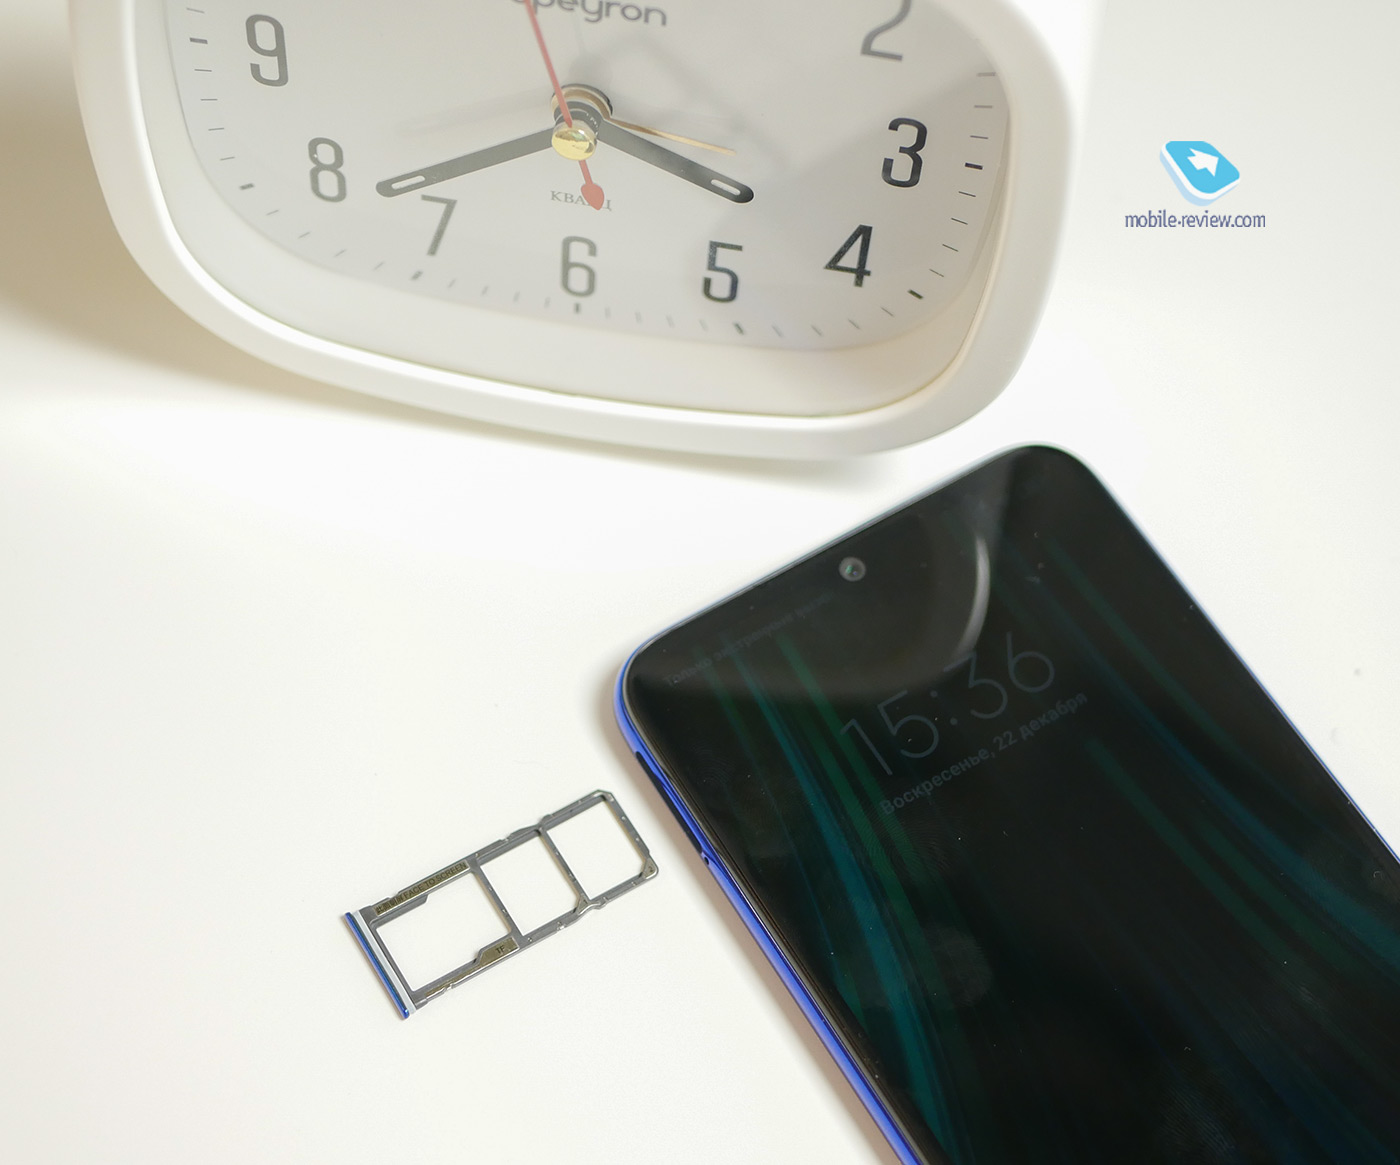 Обзор Redmi Note 8T: доступный камерофон